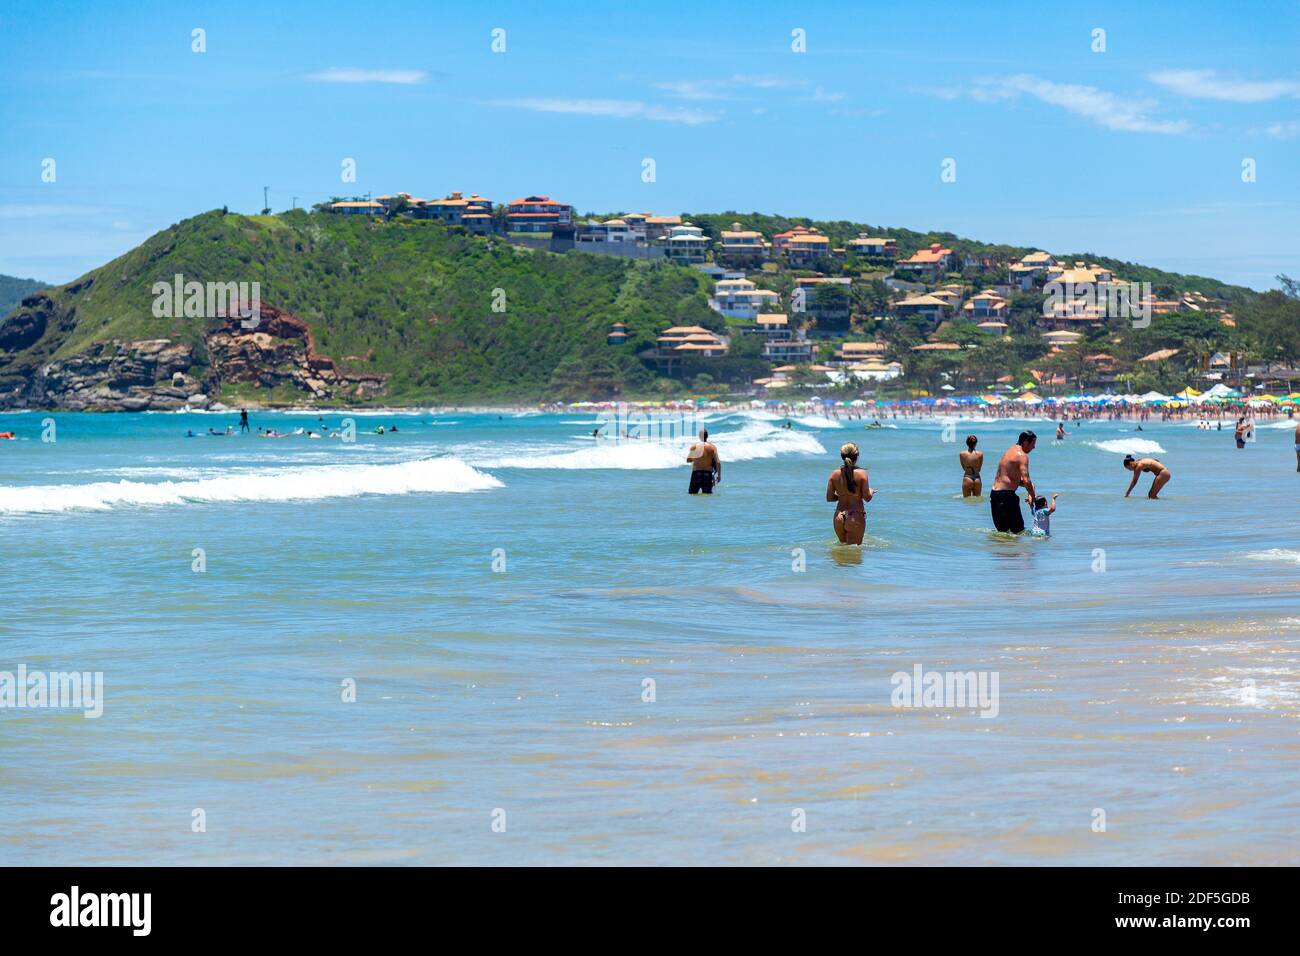 Buzios, Rio de Janeiro, Brésil – 22 décembre 2019 : Praia da Geriba, vue panoramique de cette belle plage. Les gens se baignent dans l'eau de la turqoise. Banque D'Images